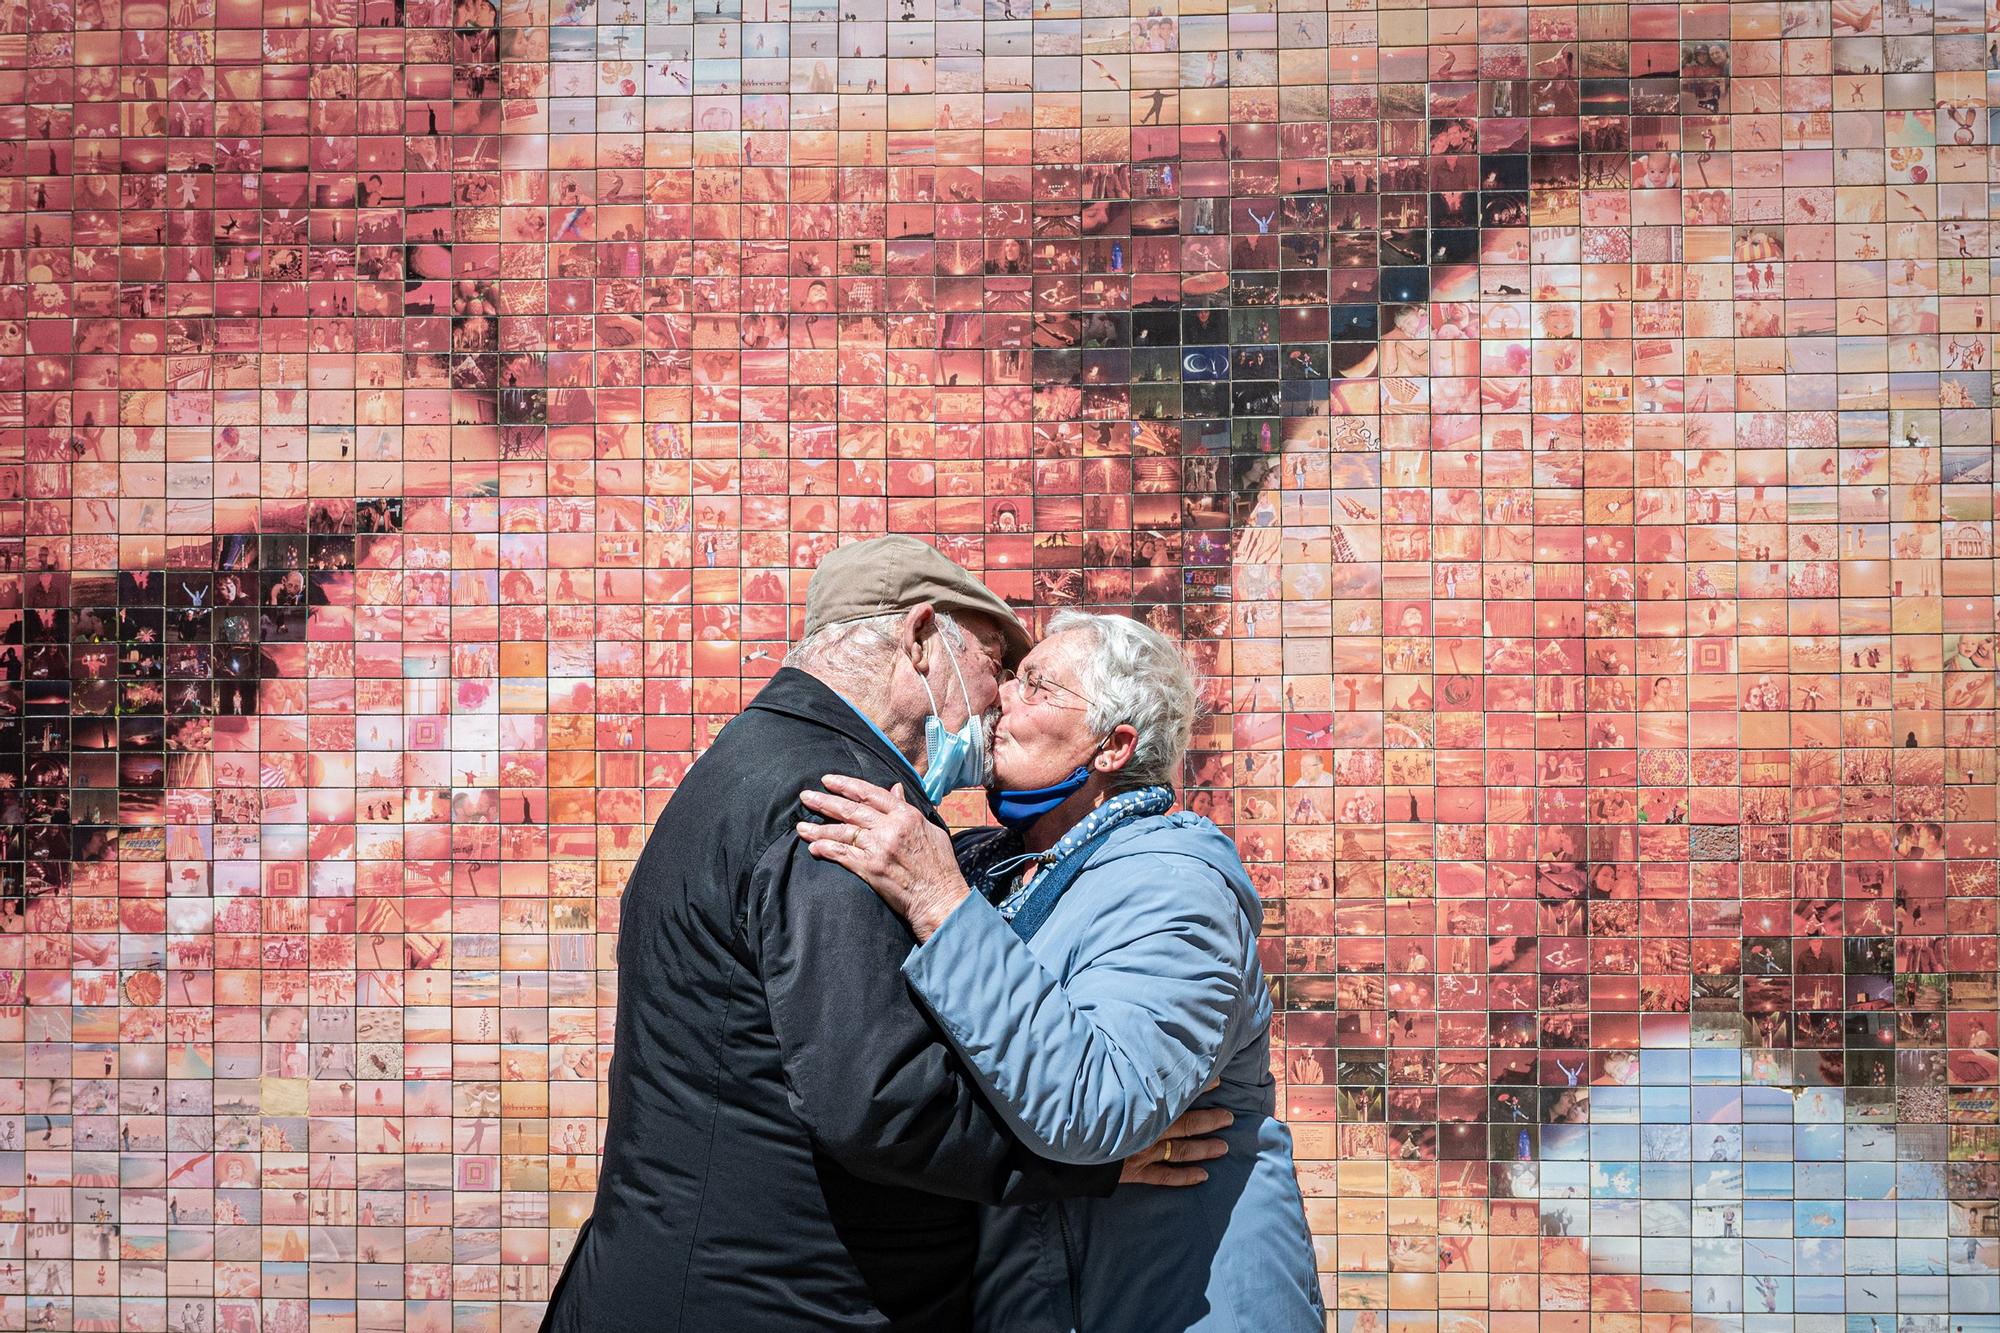 Un matrimonio se besa en Barcelona frente al mural del beso en el Barrio Gótico.